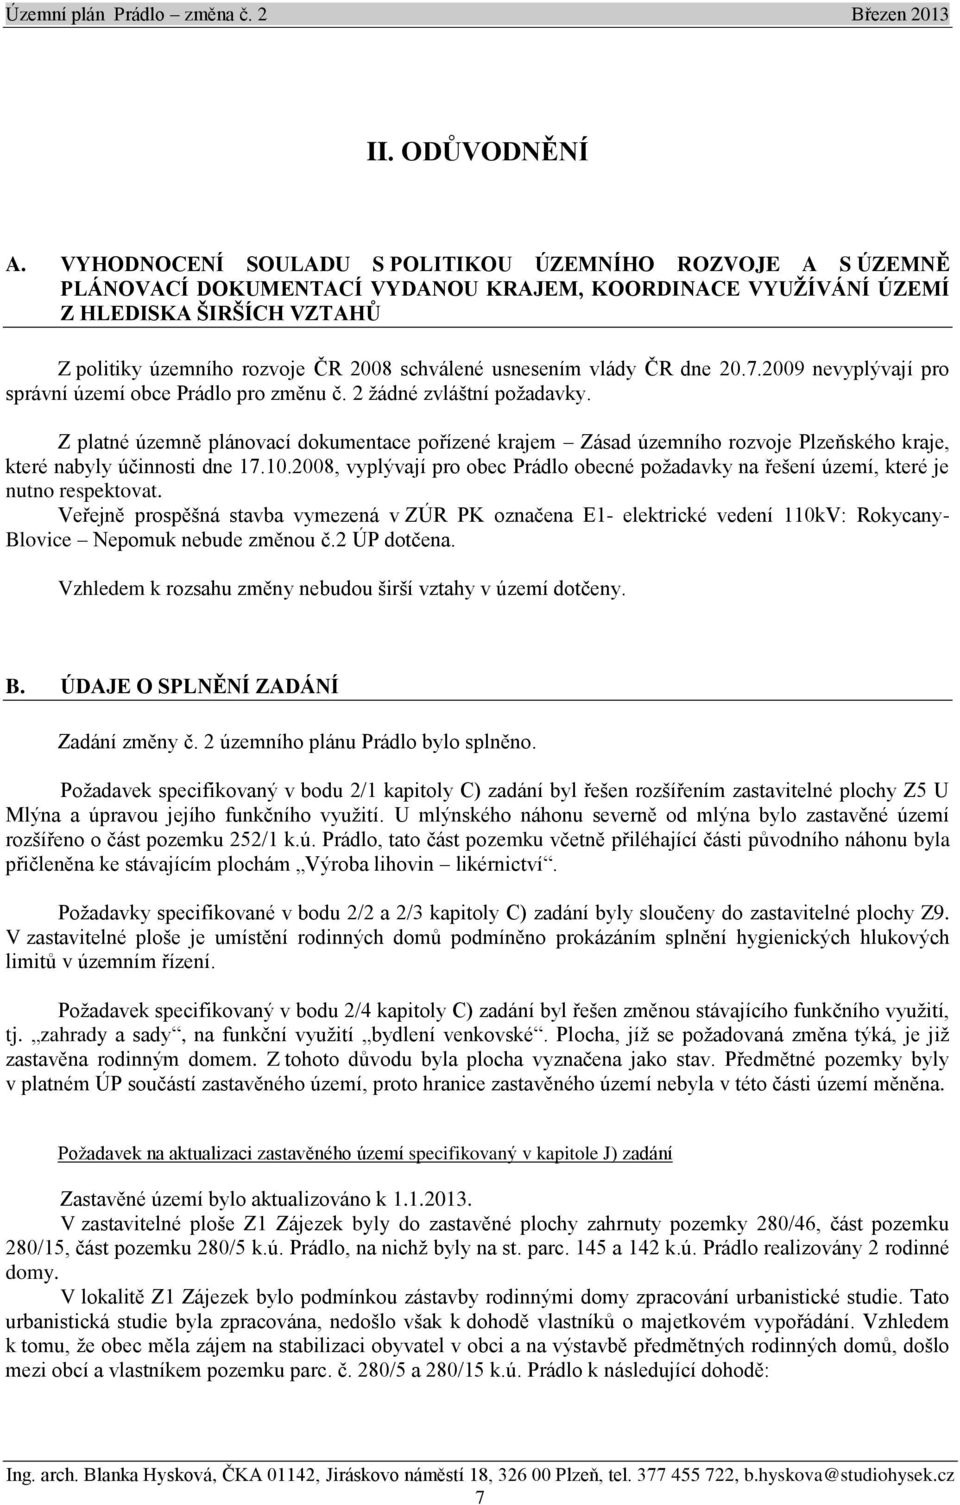 usnesením vlády ČR dne 20.7.2009 nevyplývají pro správní území obce Prádlo pro změnu č. 2 žádné zvláštní požadavky.